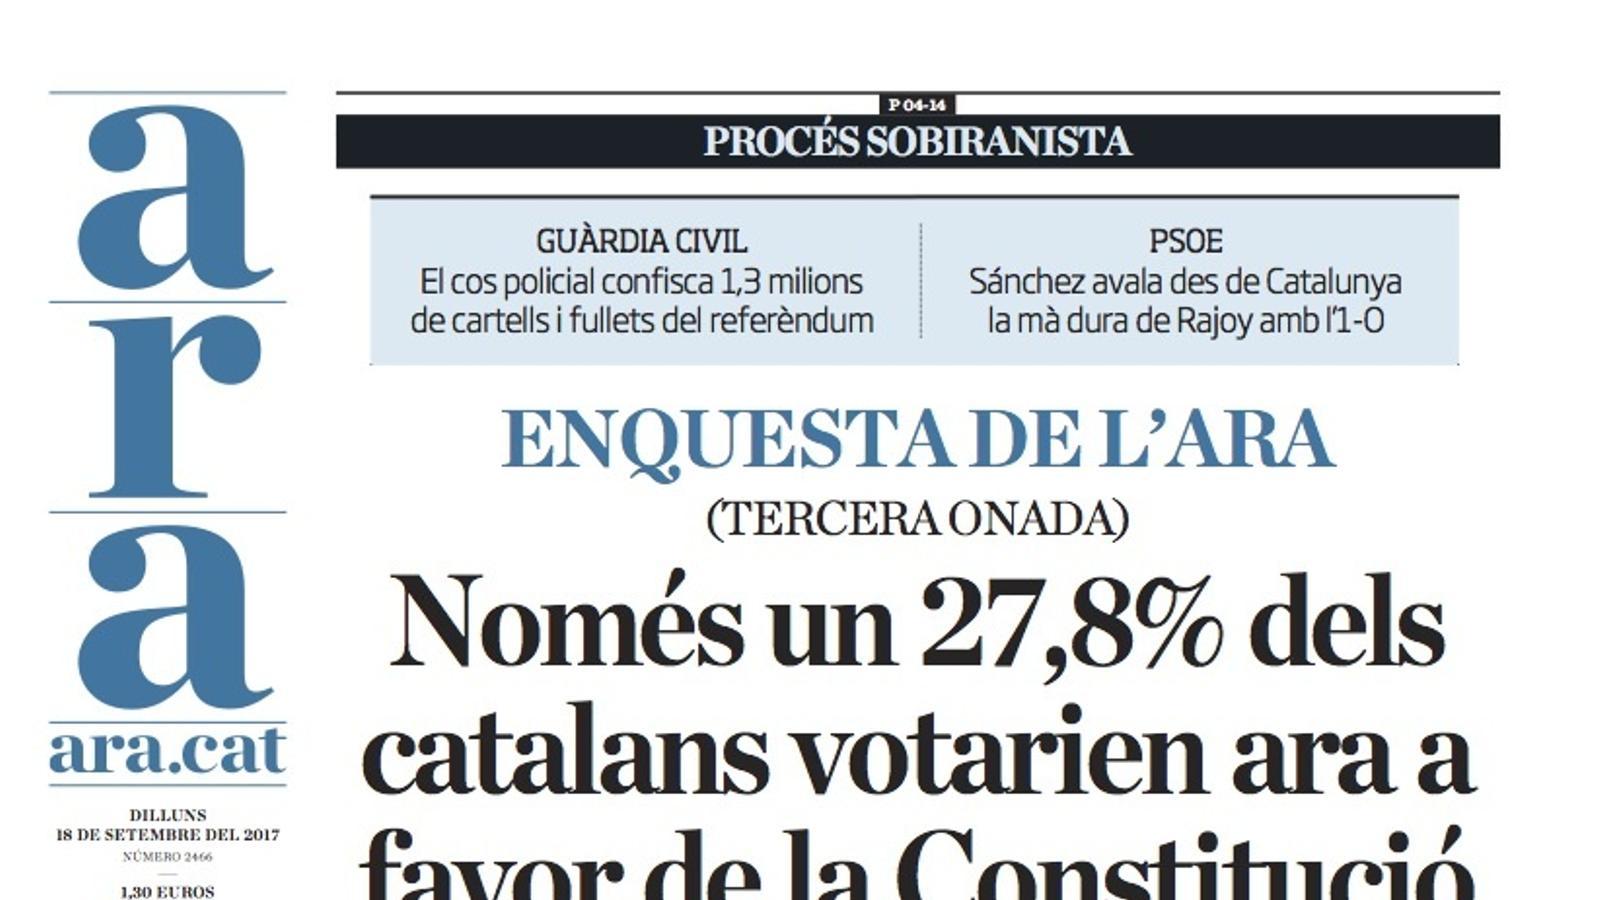 "Només un 27,8% dels catalans votarien ara a favor de la Constitució", la nova enquesta de l'ARA a la portada d'aquest dilluns